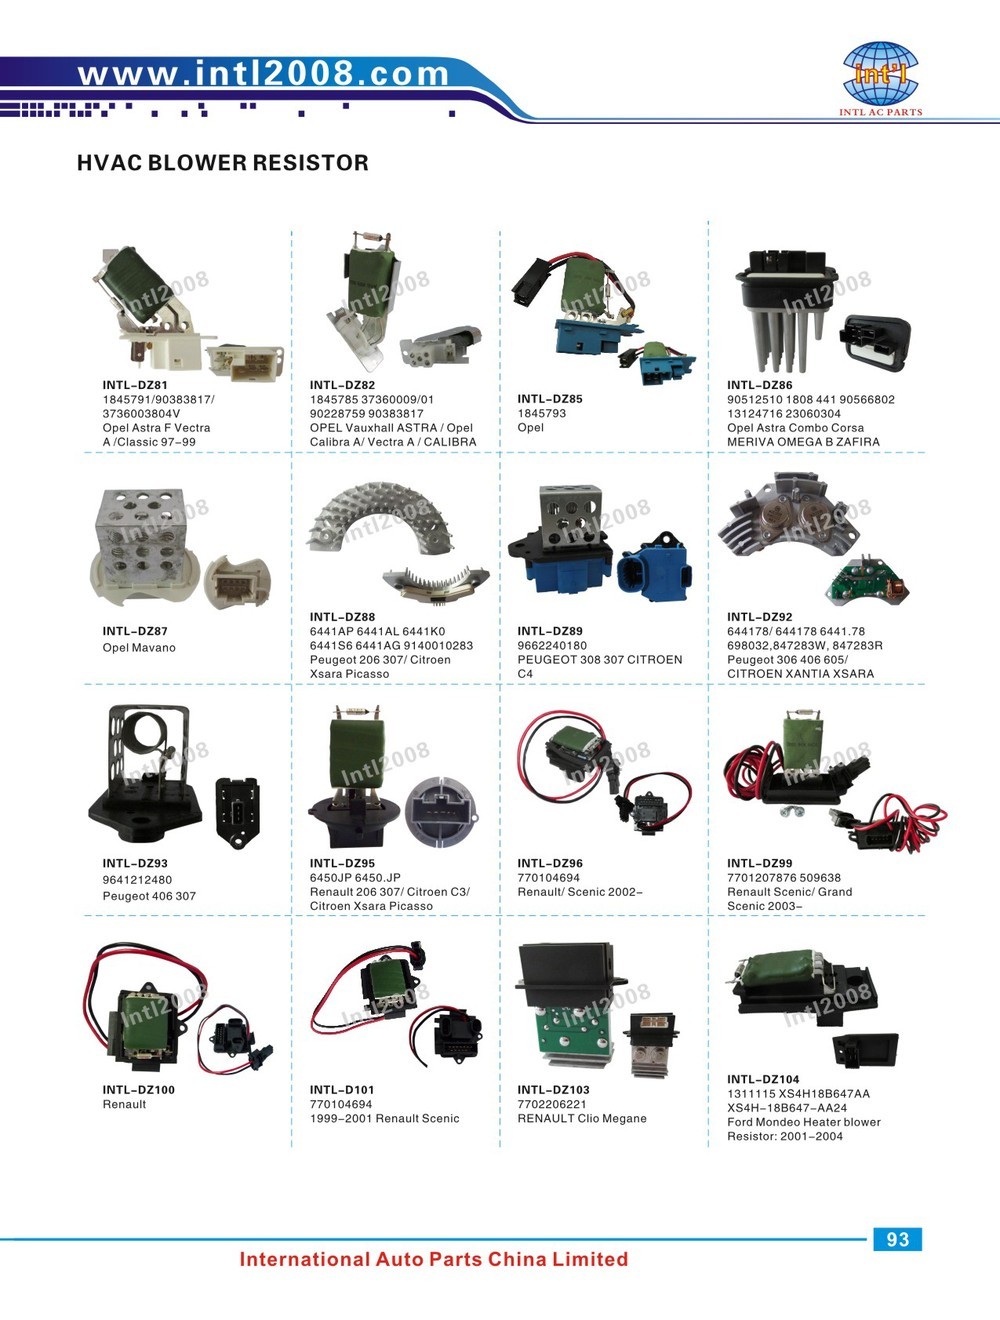 MT1811 ZZL161D85 ZZM161D85 4C2Z19A706BA Heater blower Motor fan Resistor Rheostat for Ford F-150/Ranger